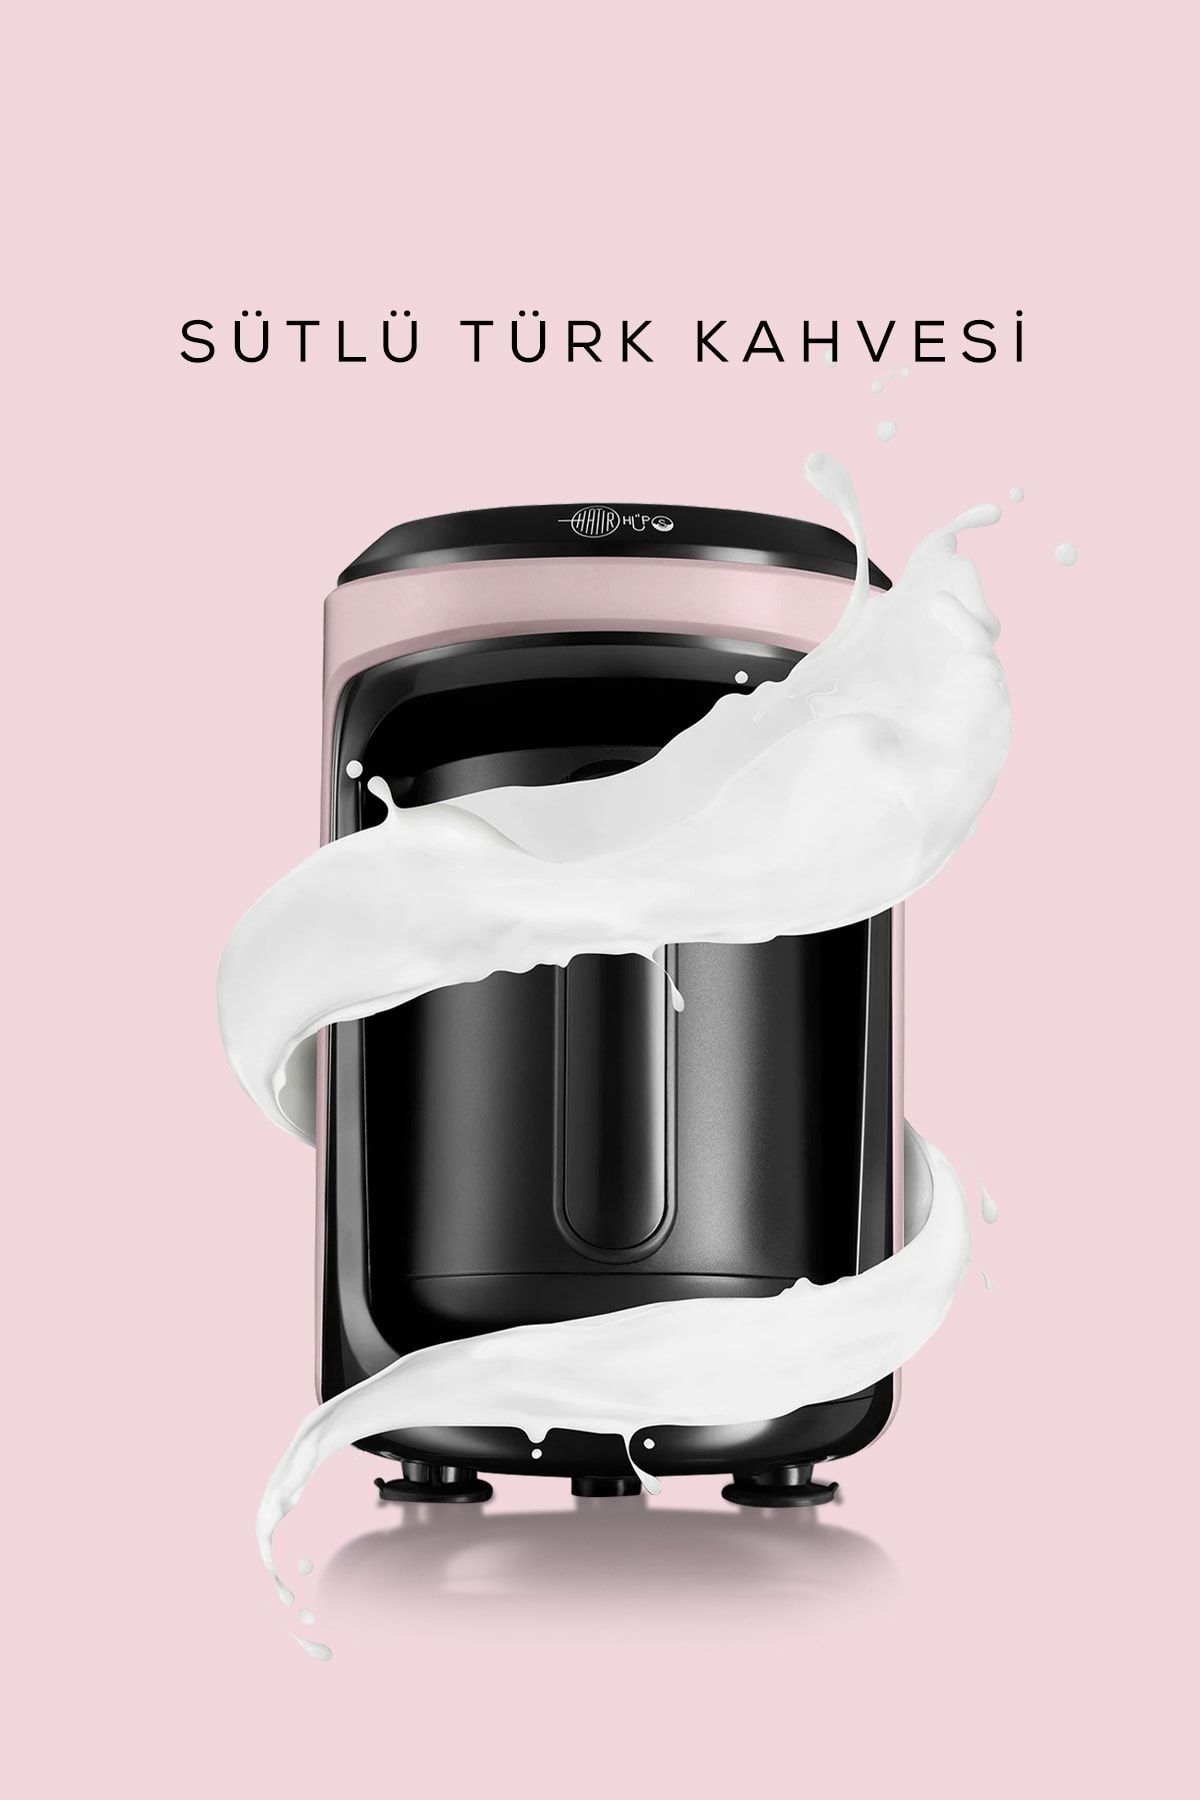 Karaca Hatır Hüps Sütlü Türk Kahve Makinesi Cosmic Lilac